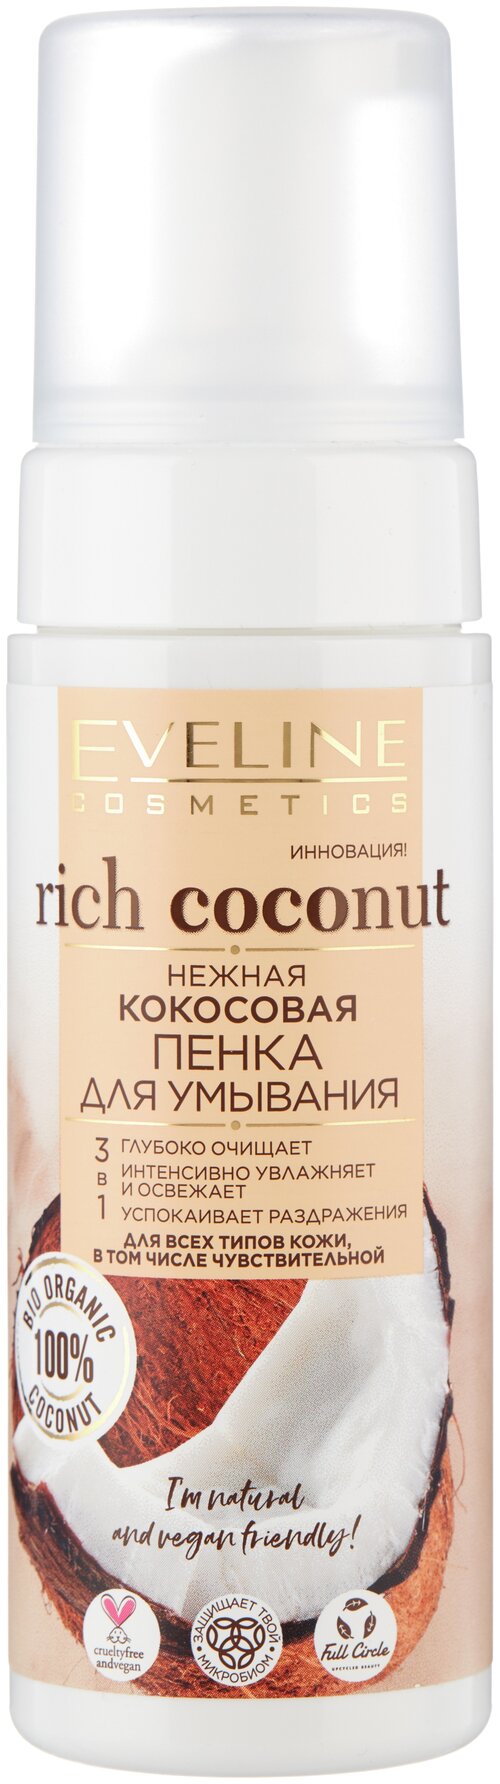 Пенка для умывания нежная, кокосовая, 3в1, Eveline Cosmetics, Rich Coconut, 150 мл